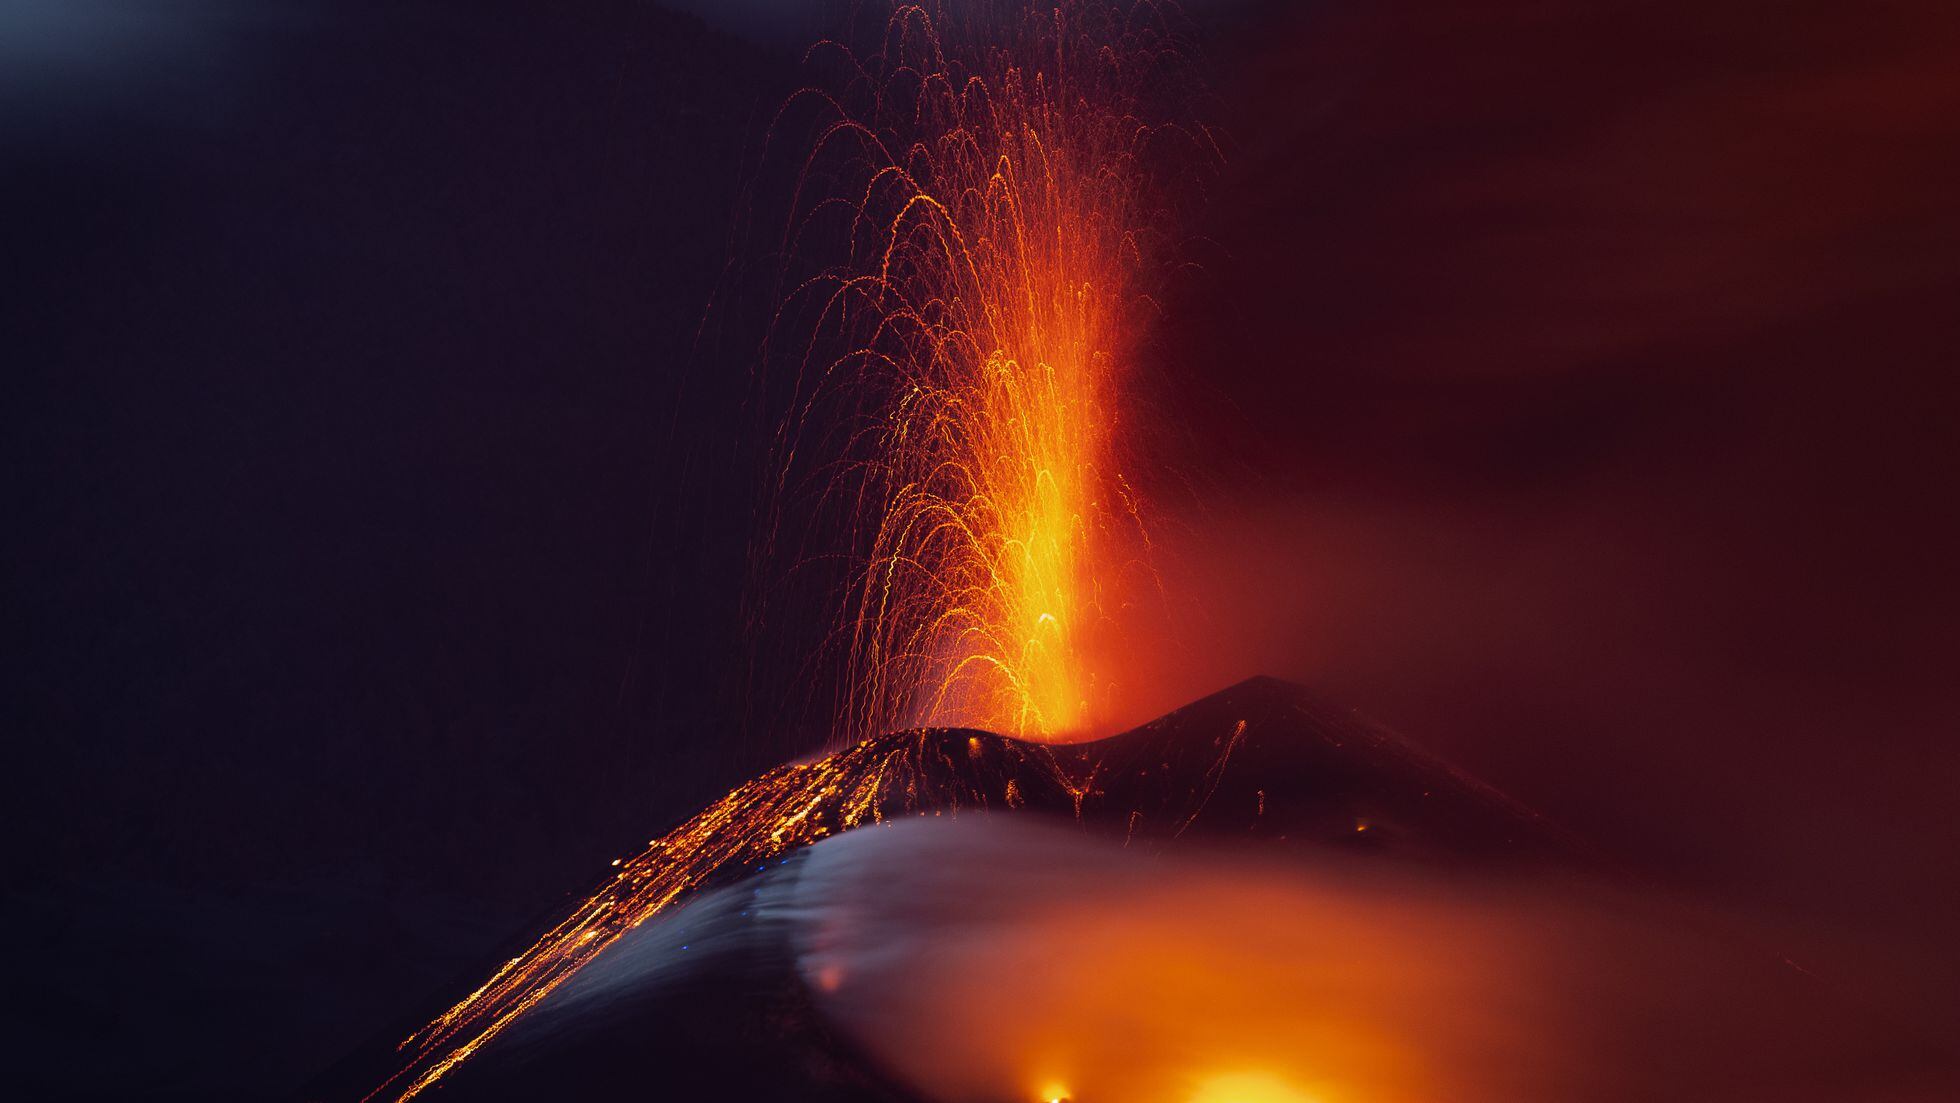 volcan de la Palma en erupcion directo expulsando lava por la boca del volcan formando coladas de lava.